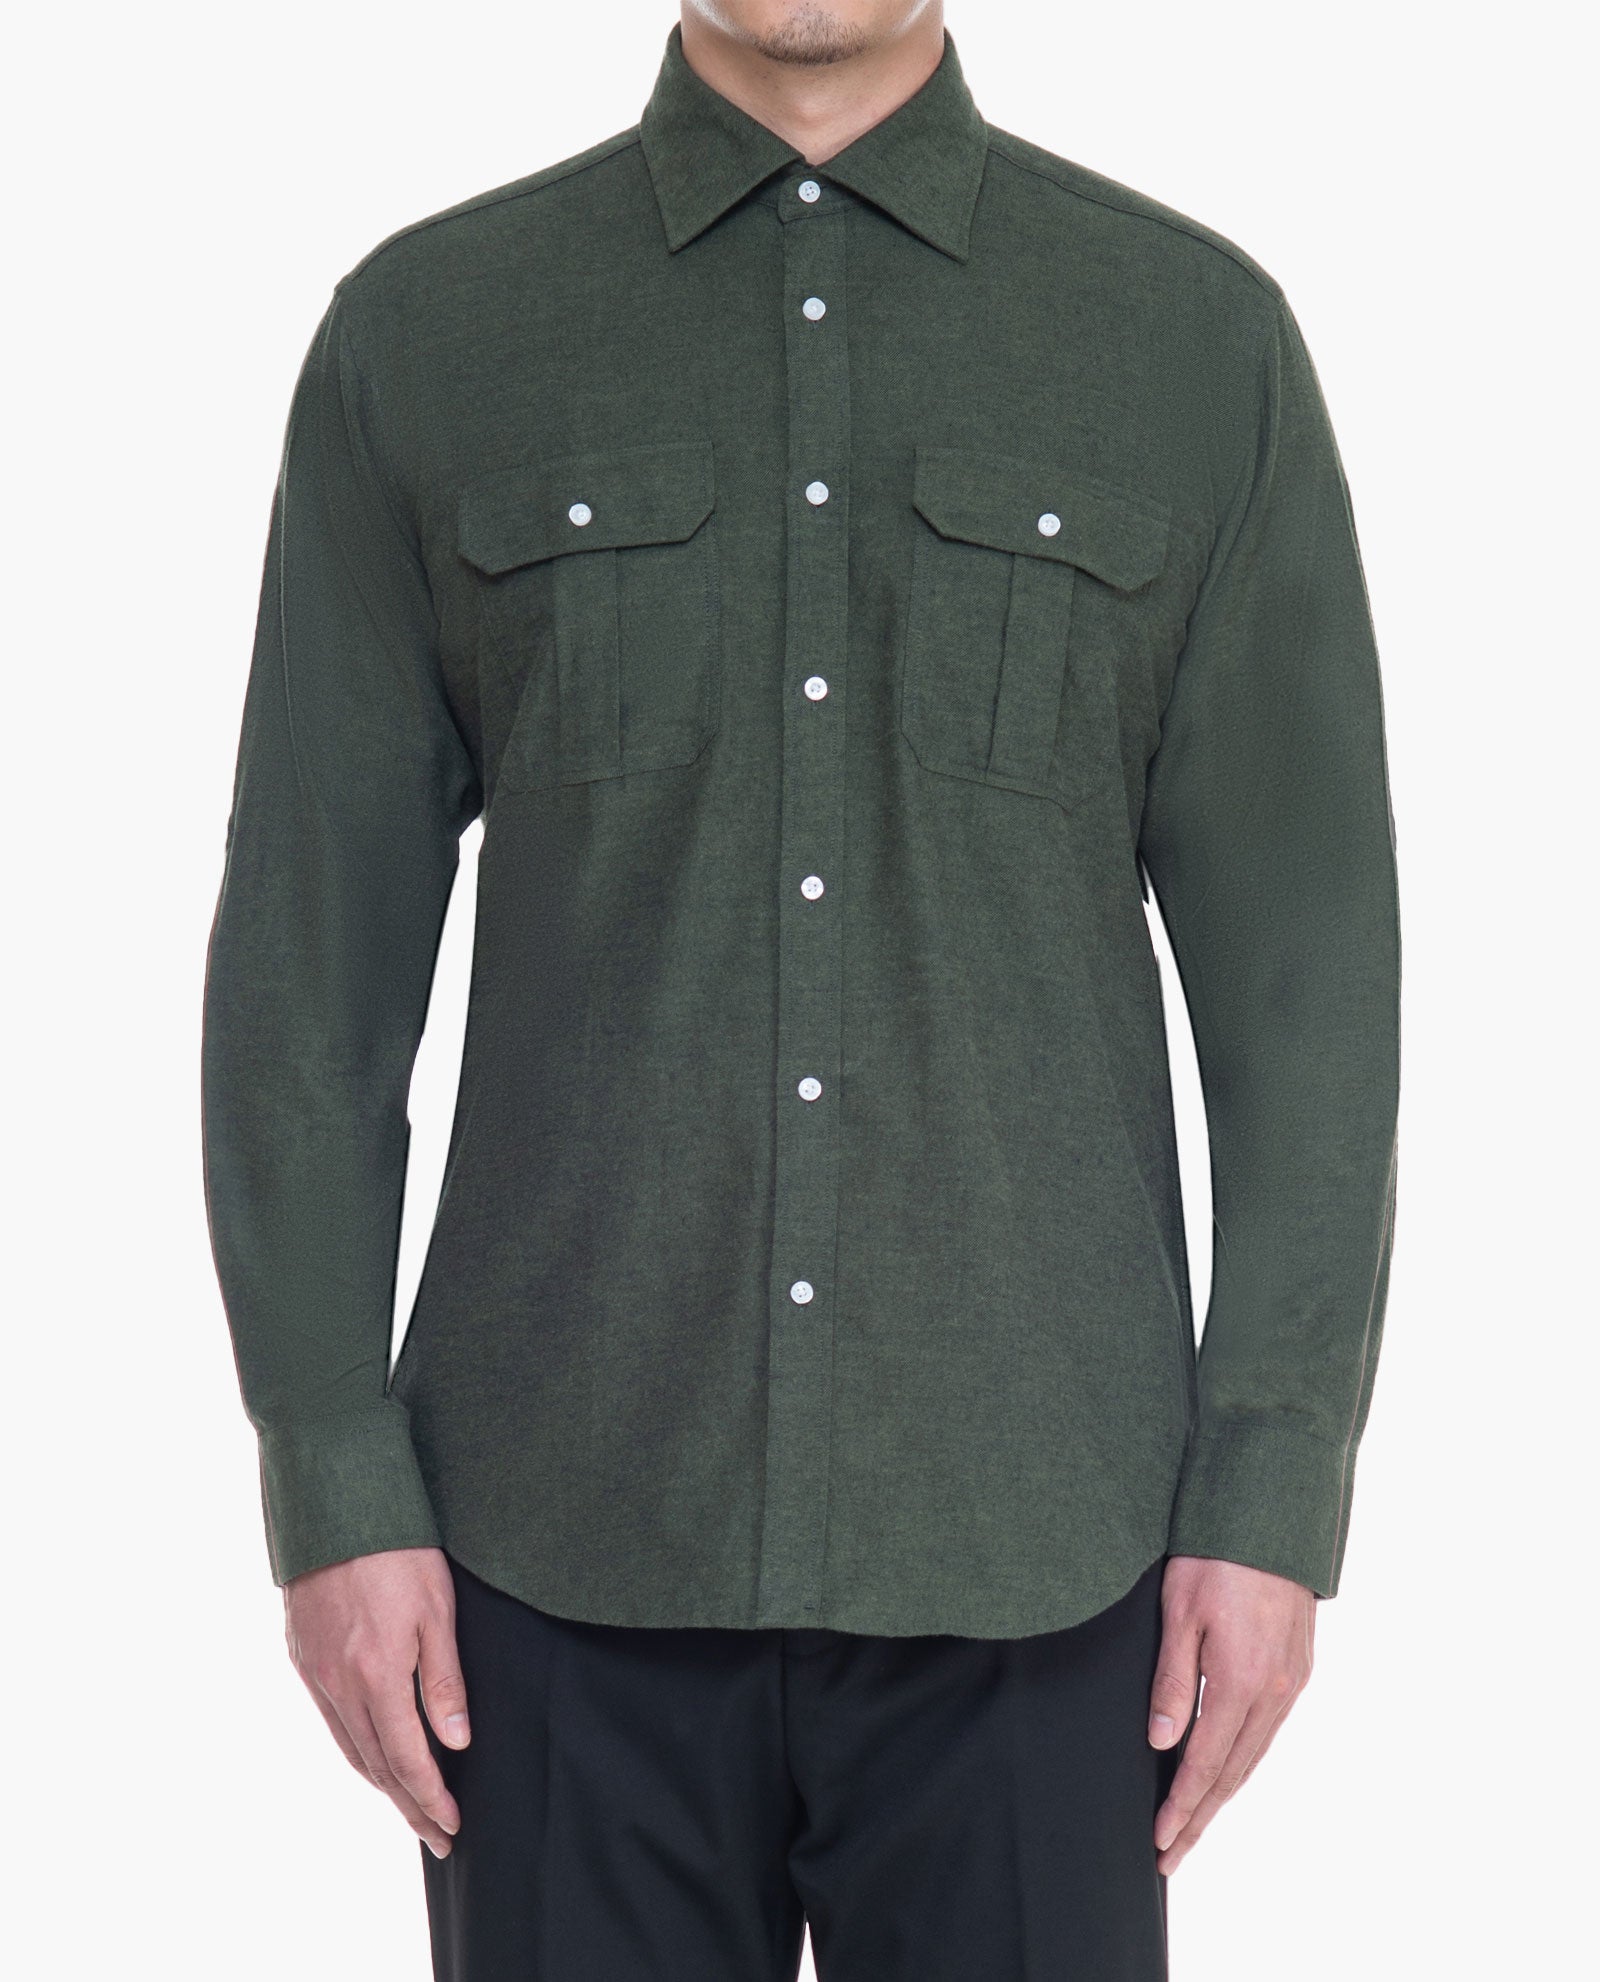 Green Flannel Sport Shirt